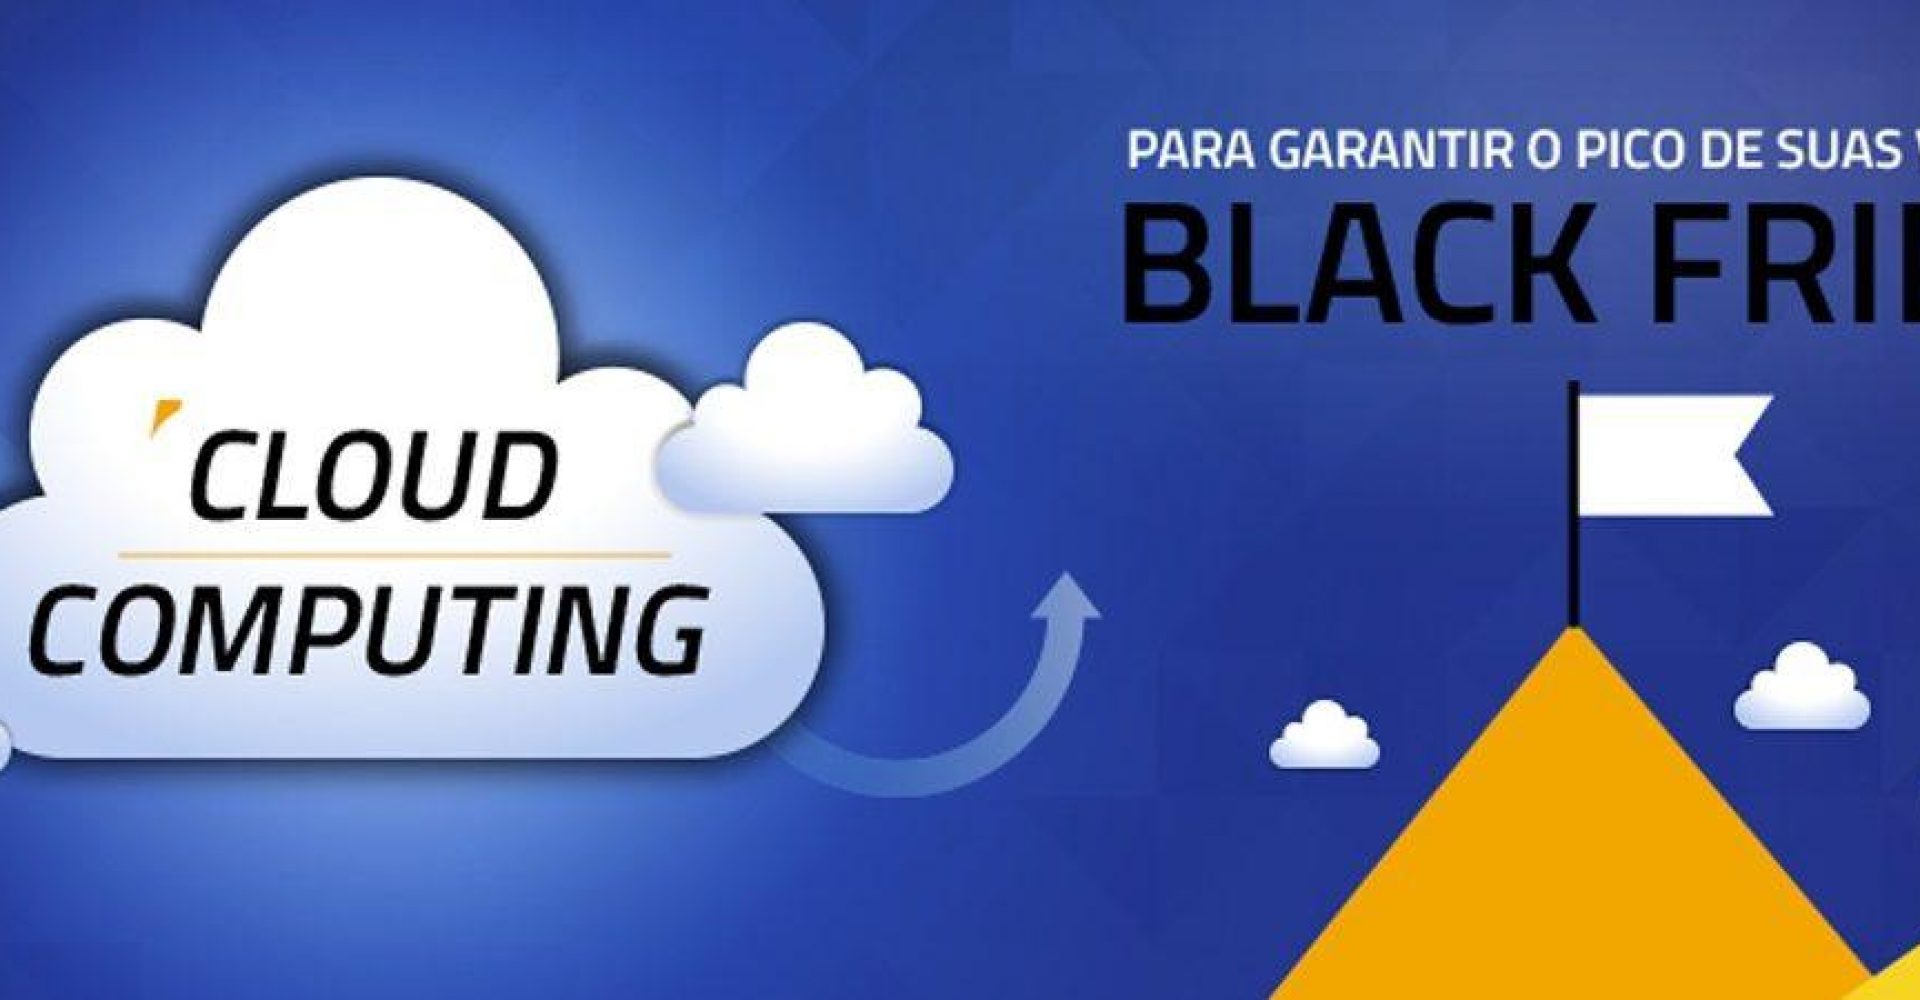 Black Friday: vantagens da Cloud Computing na maior data do varejo online.